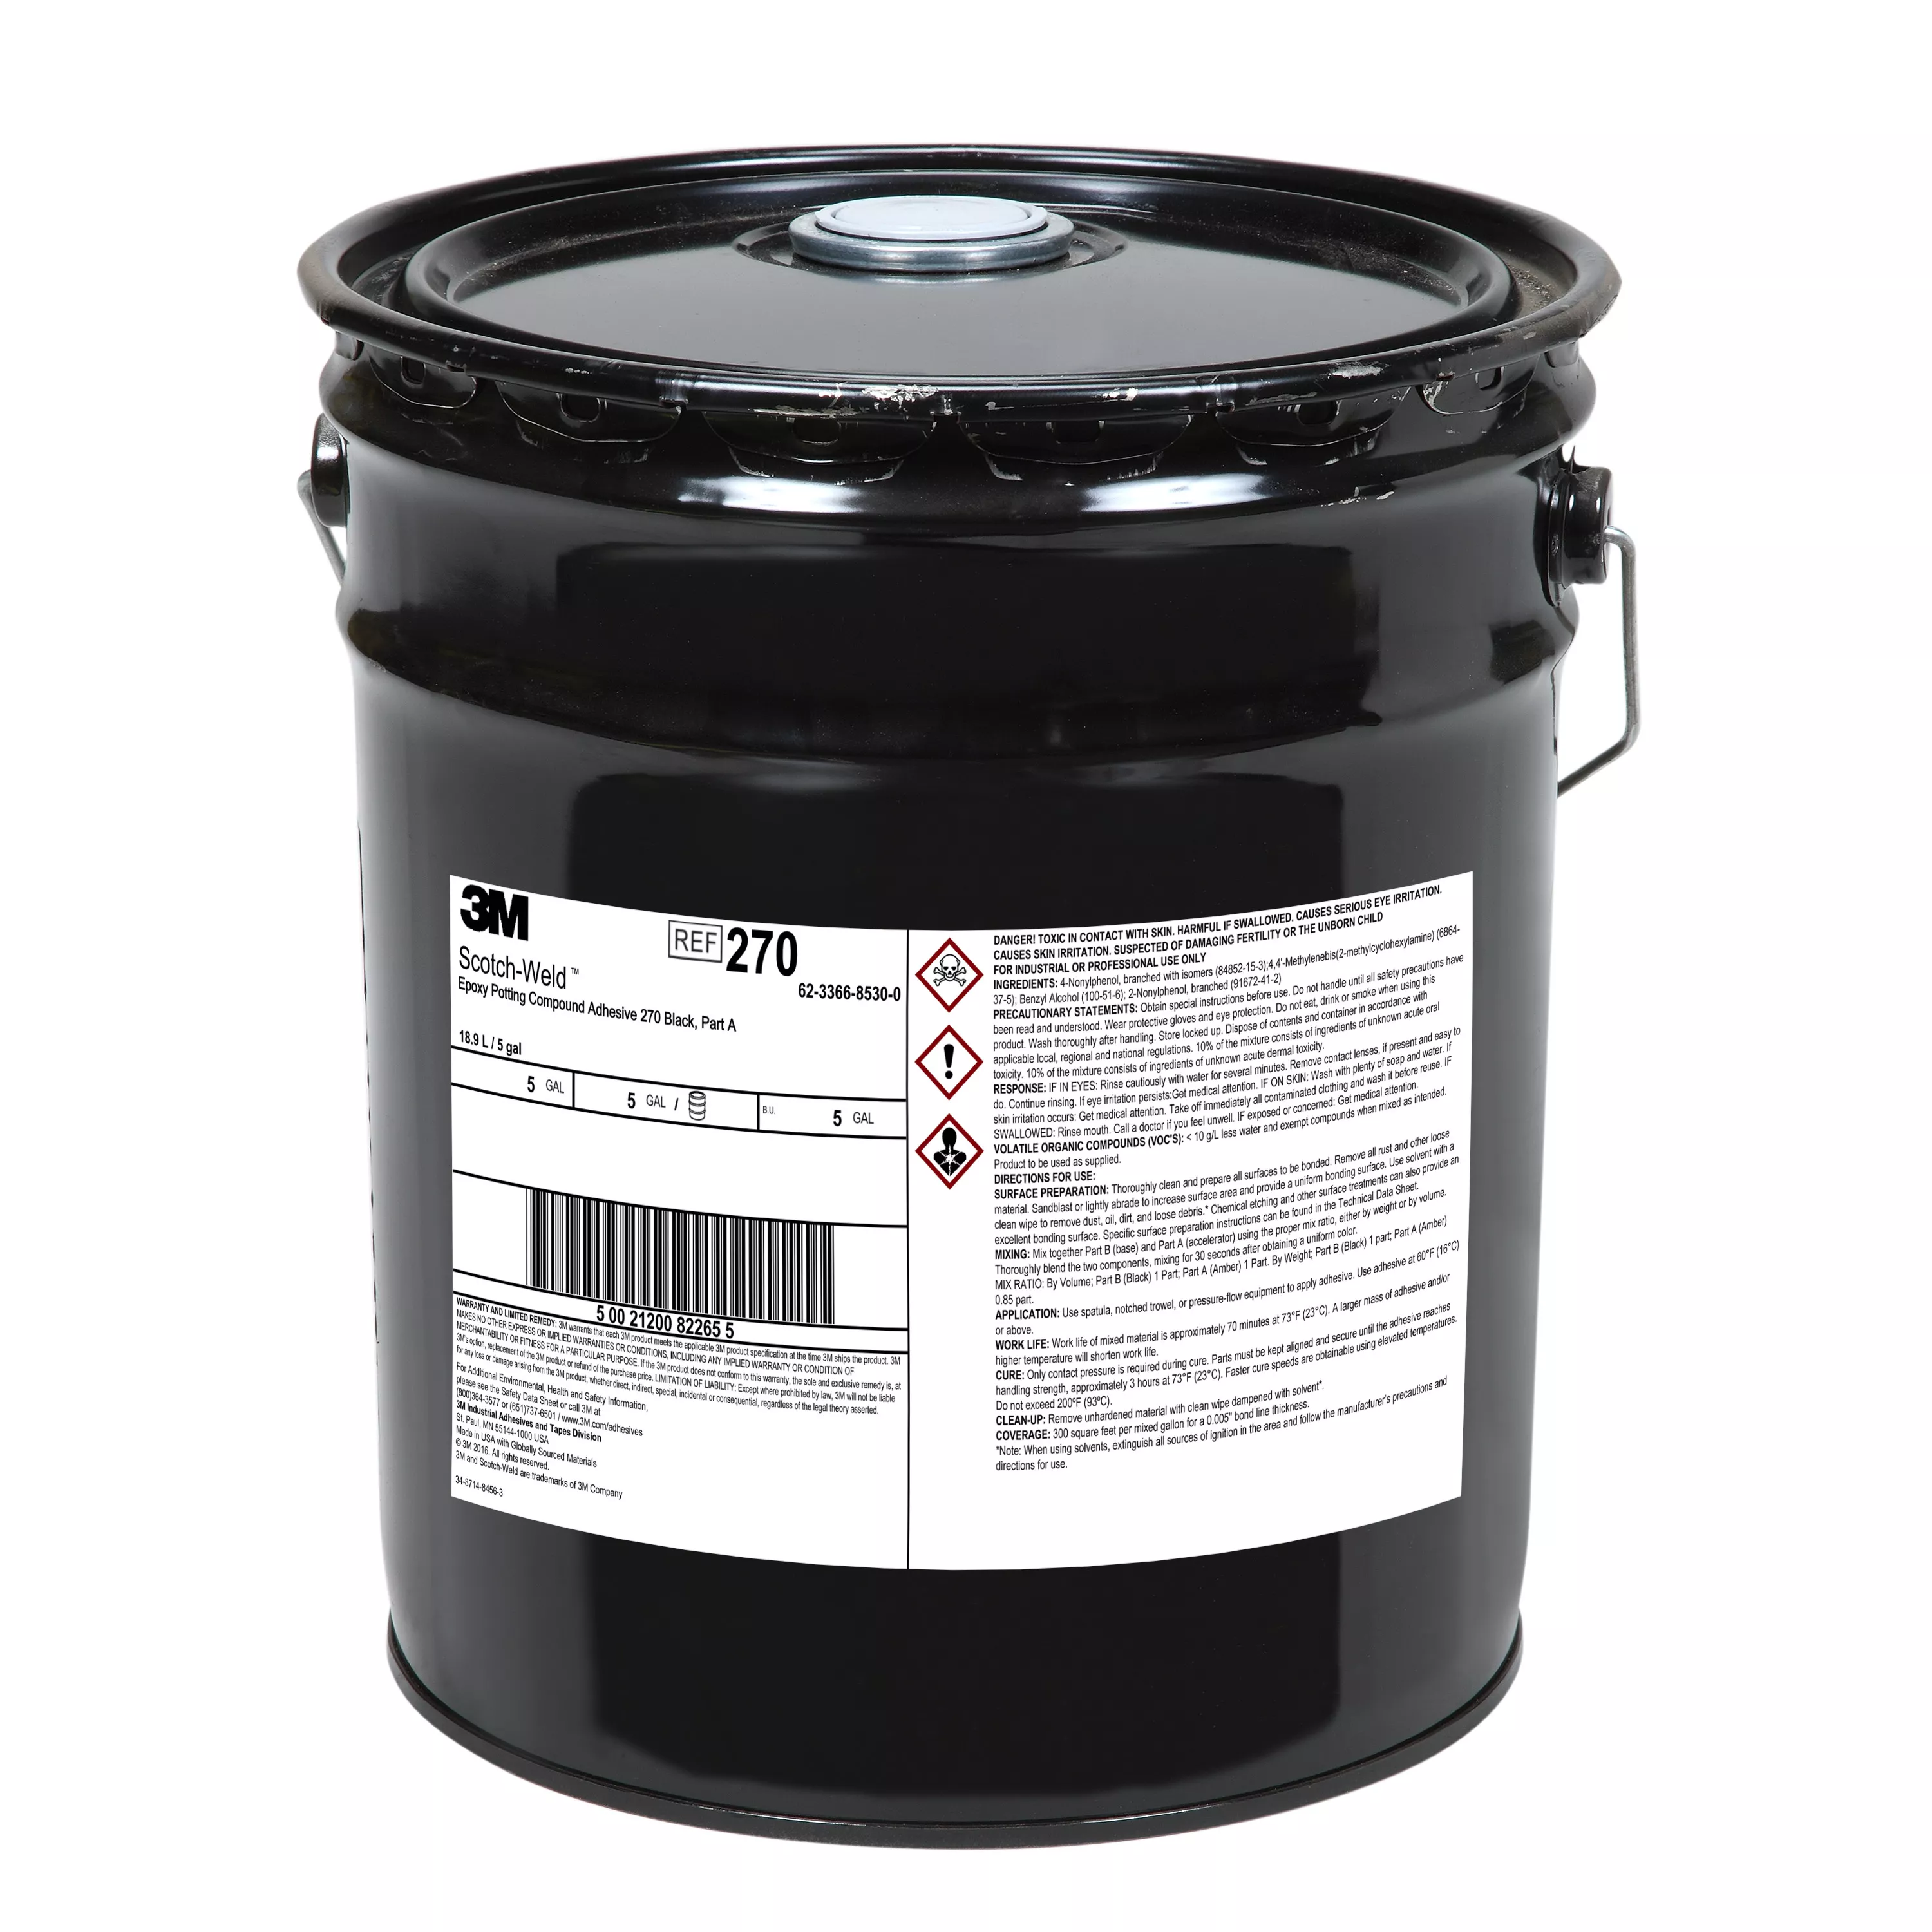 3M™ Scotch-Weld™ Epoxy Potting Compound 270, Black, Part A, 5 Gallon
(Pail), 1 Can/Drum